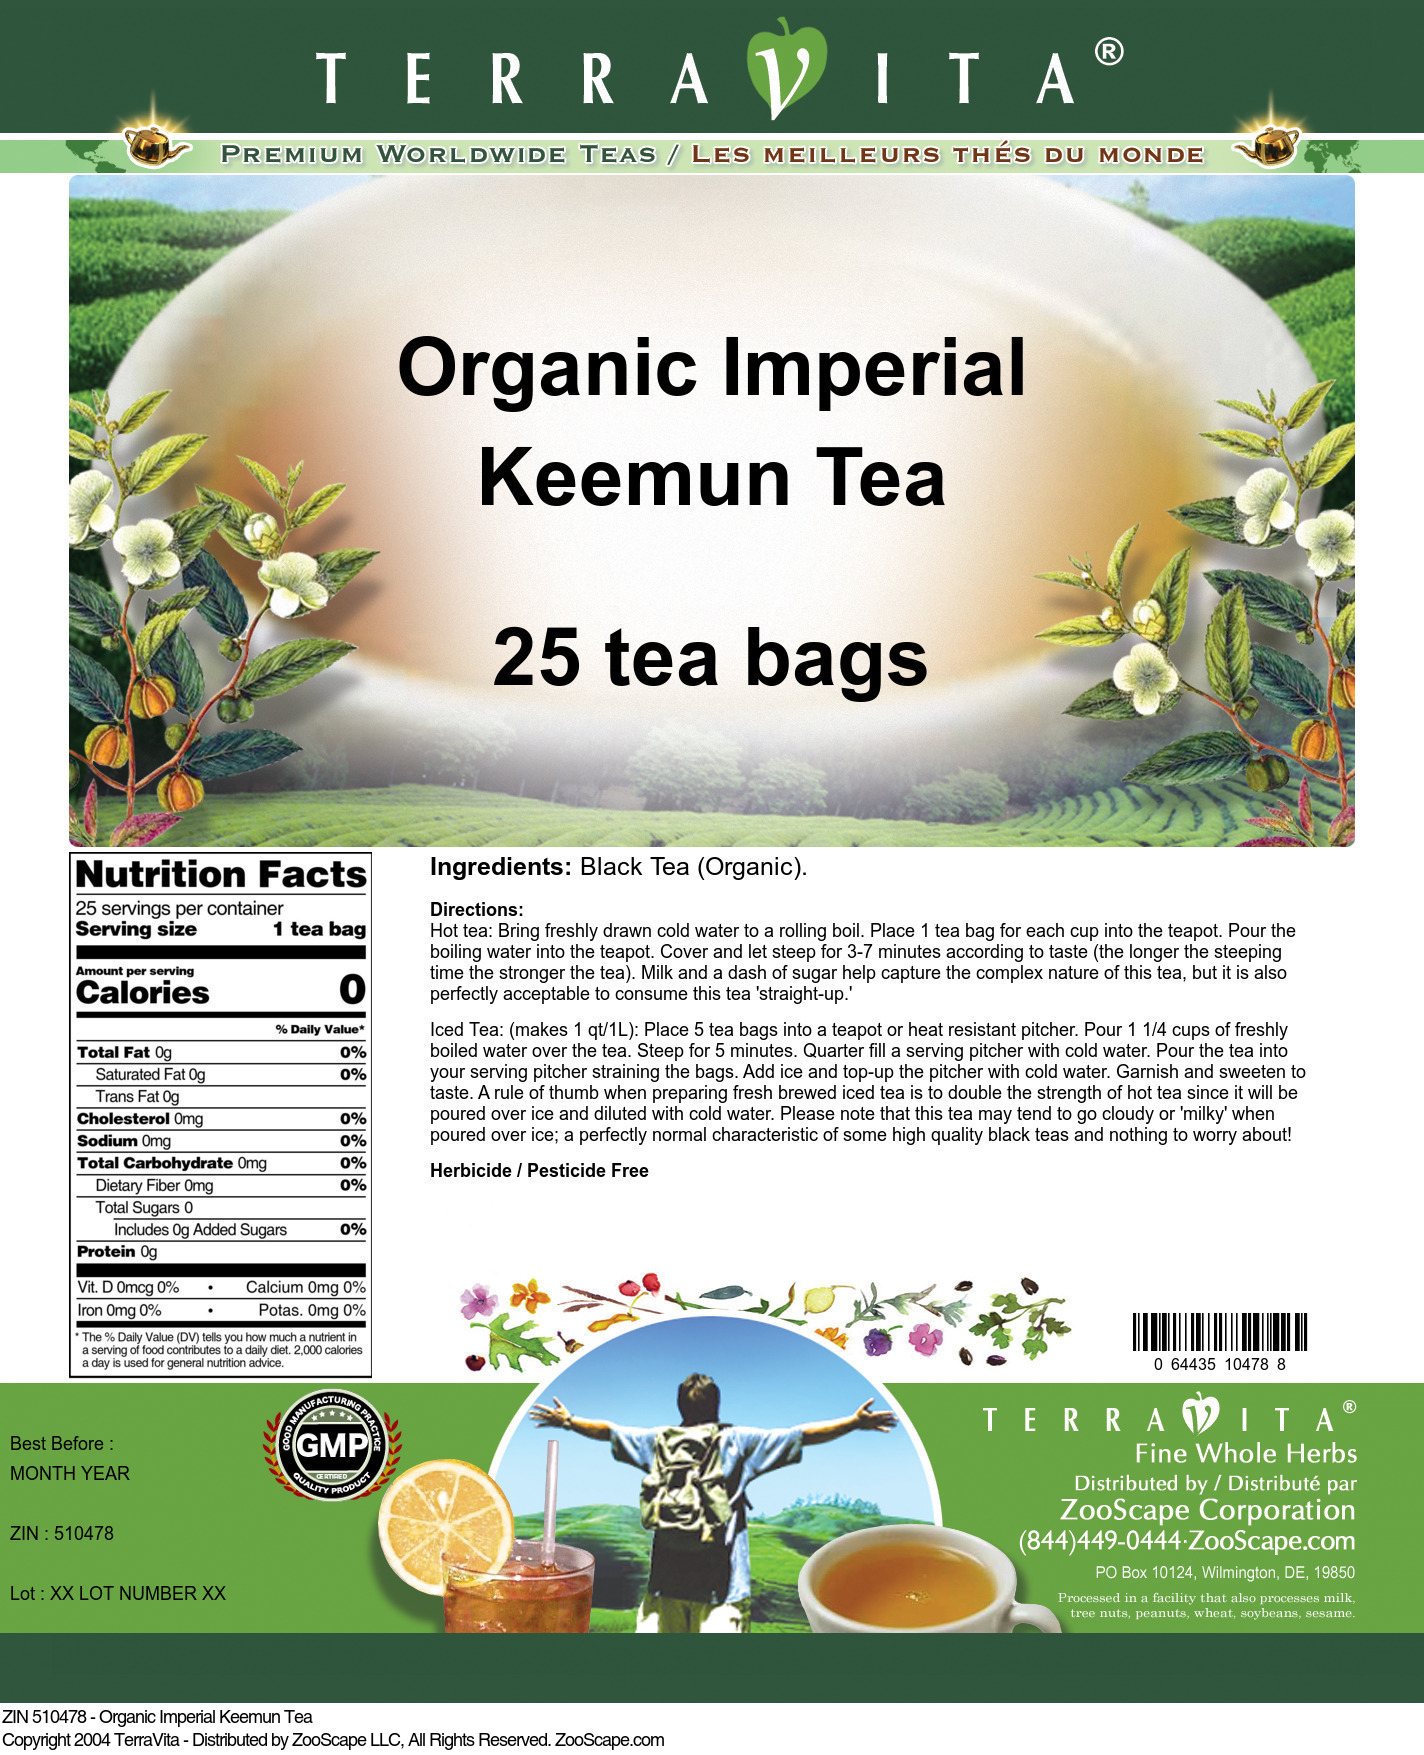 Organic Imperial Keemun Tea - Label